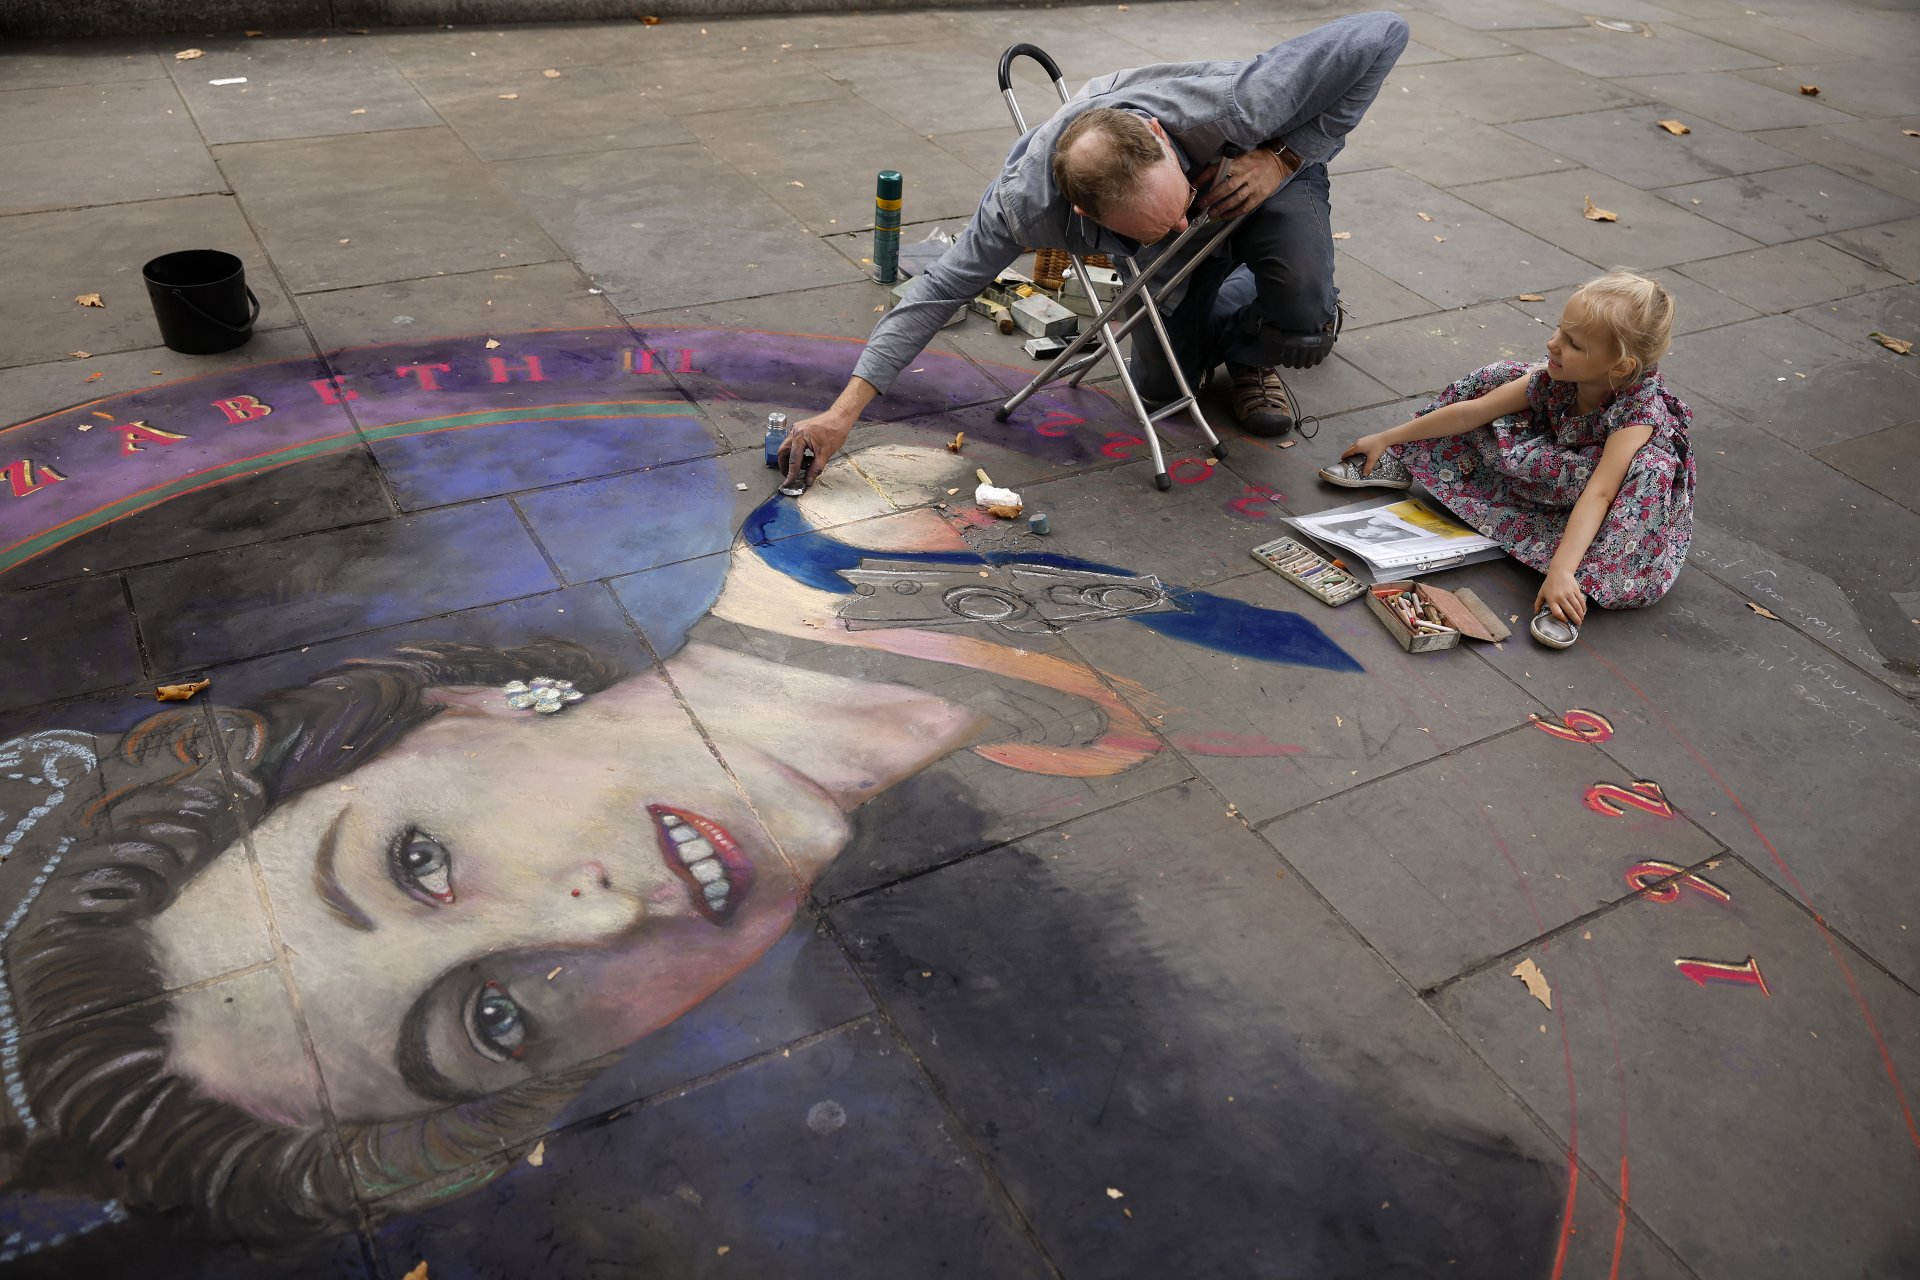 Тригодишната Вайълет Уилямс наблюдава как художникът Джулиан Бивър работи върху портрет на кралица Елизабет II, наарисуван с тебешири, на тротоара близо до площад Трафалгар.